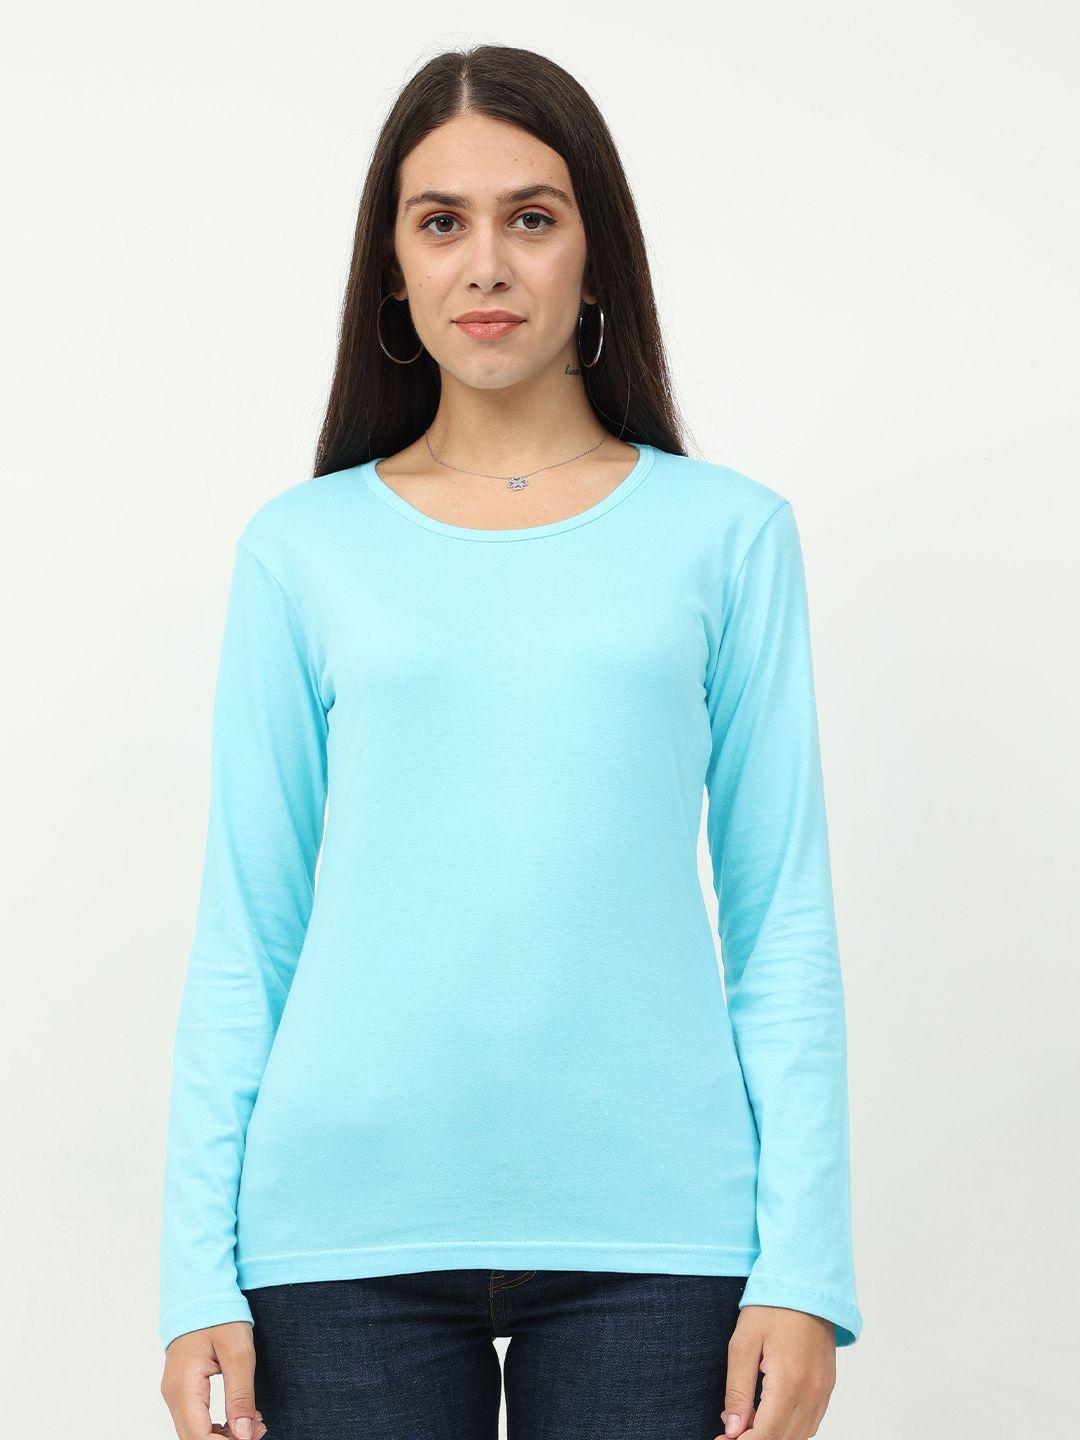 fleximaa-women-blue-t-shirt